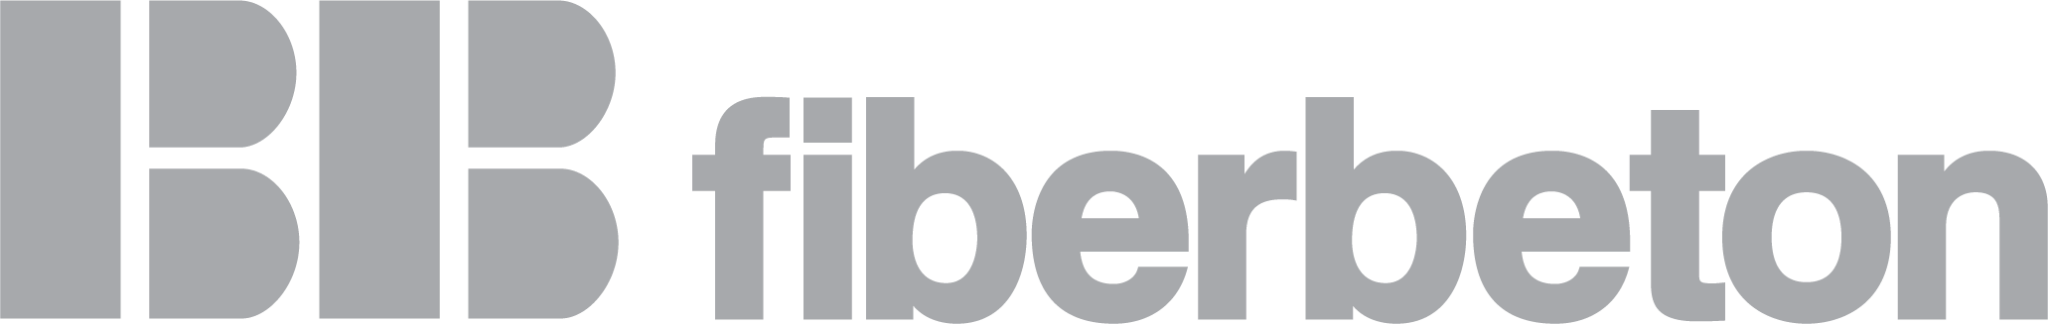 BB-fiberbeton-logo.png